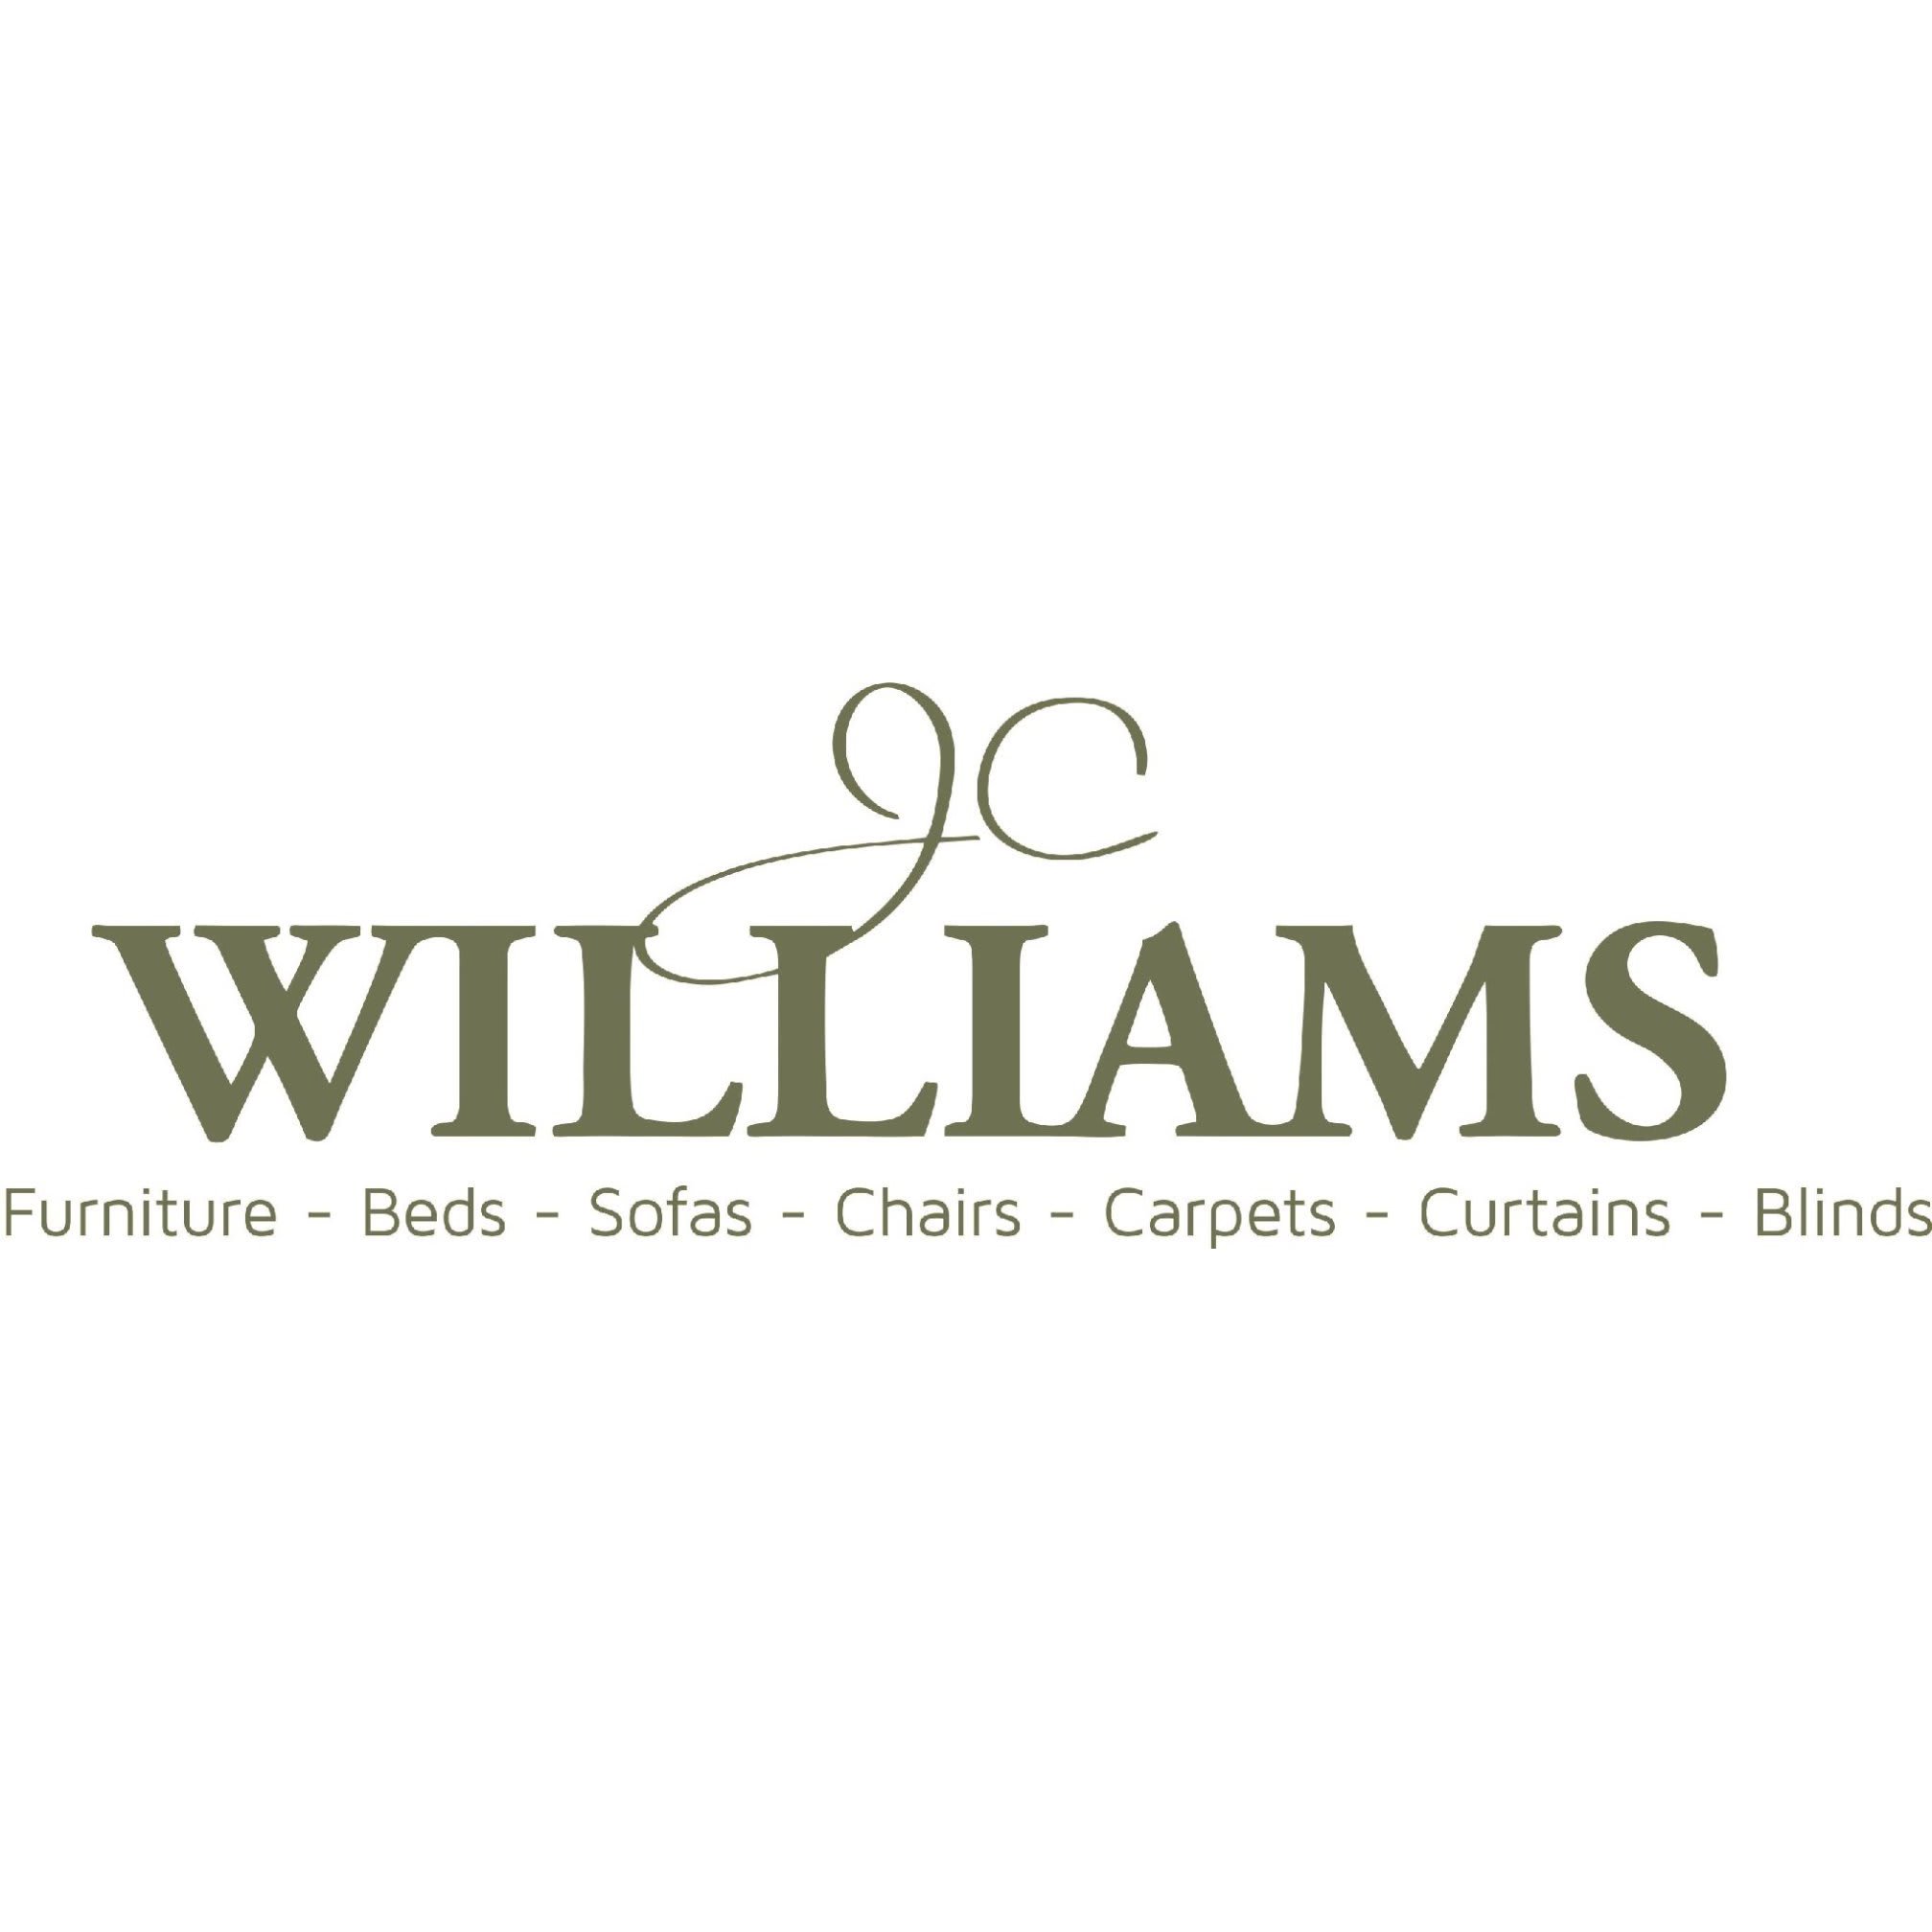 J C Williams & Sons Furnishers Ltd - Helston, Cornwall TR13 8AB - 01326 572357 | ShowMeLocal.com